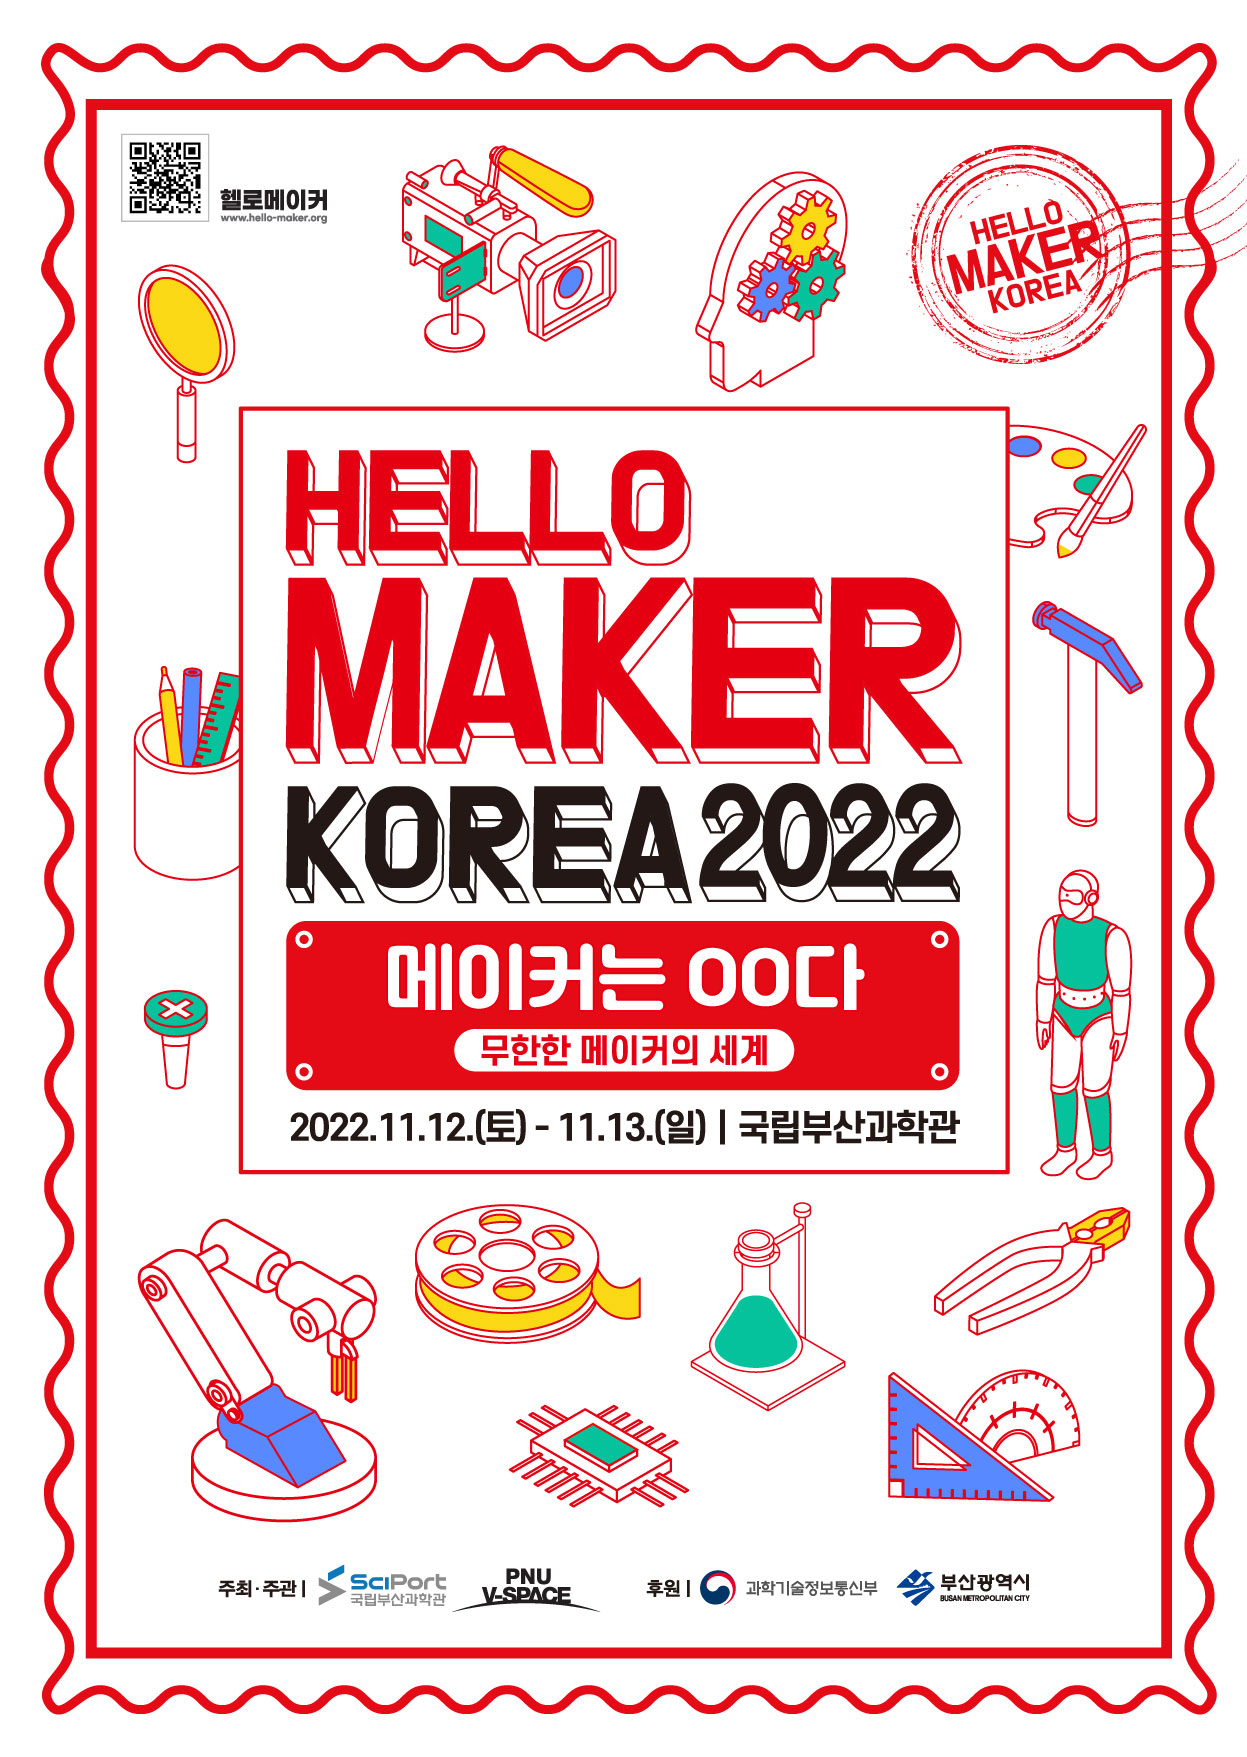 「헬로 메이커 코리아 2022」개최